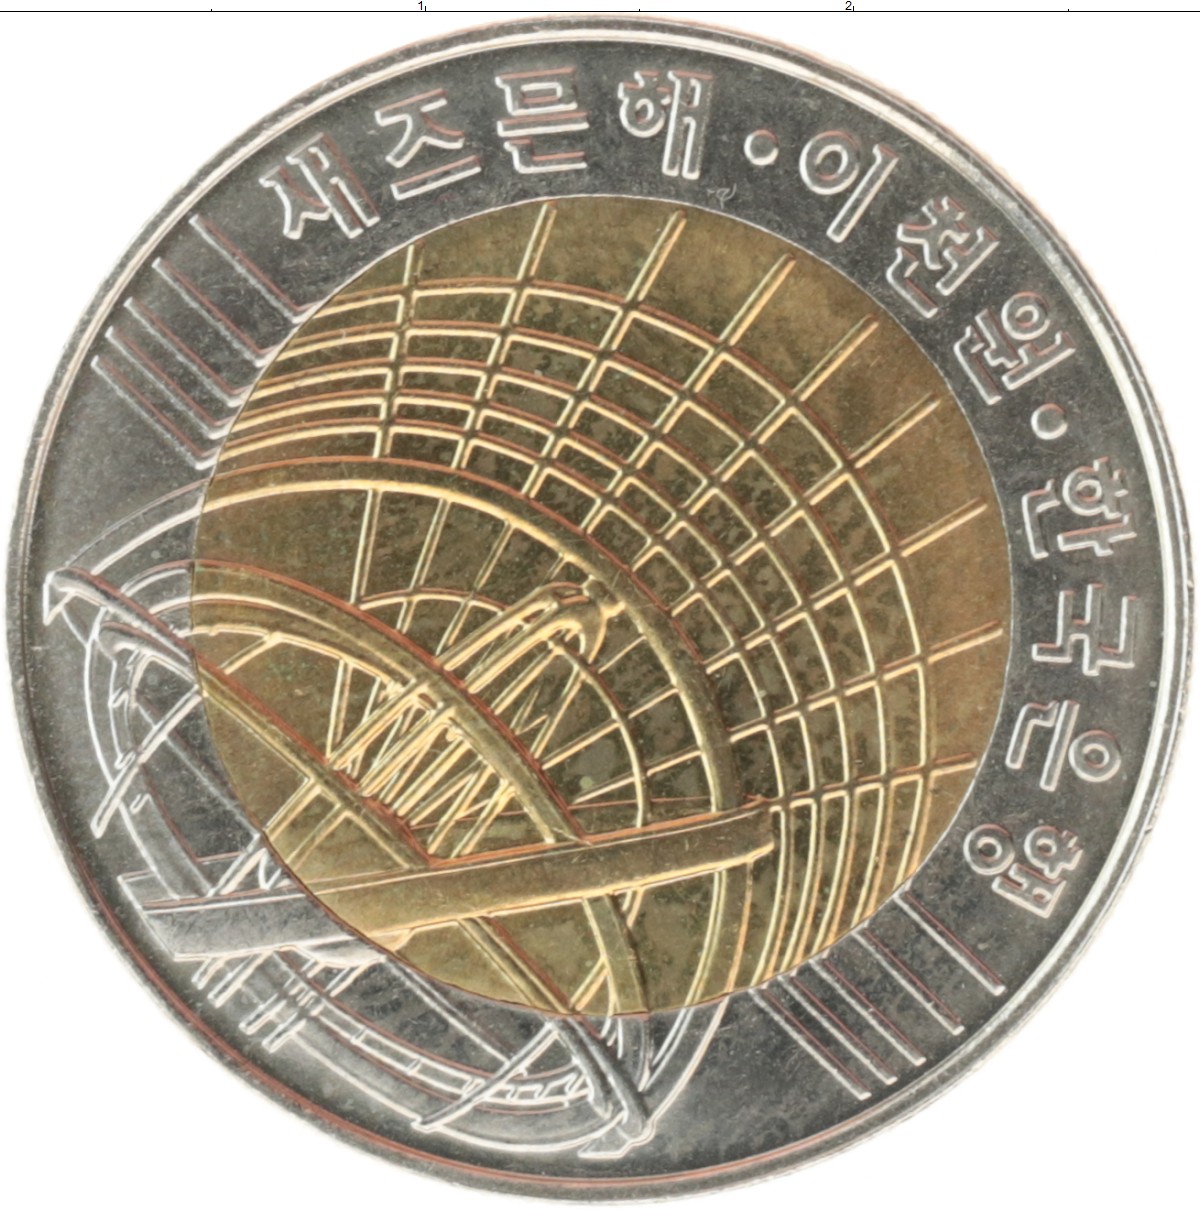 Миллениум 2000 год. Монеты Южная Корея 2000 г. 2000 Вон в рублях. Южная Корея 2000 вон, 2000 Миллениум описание.